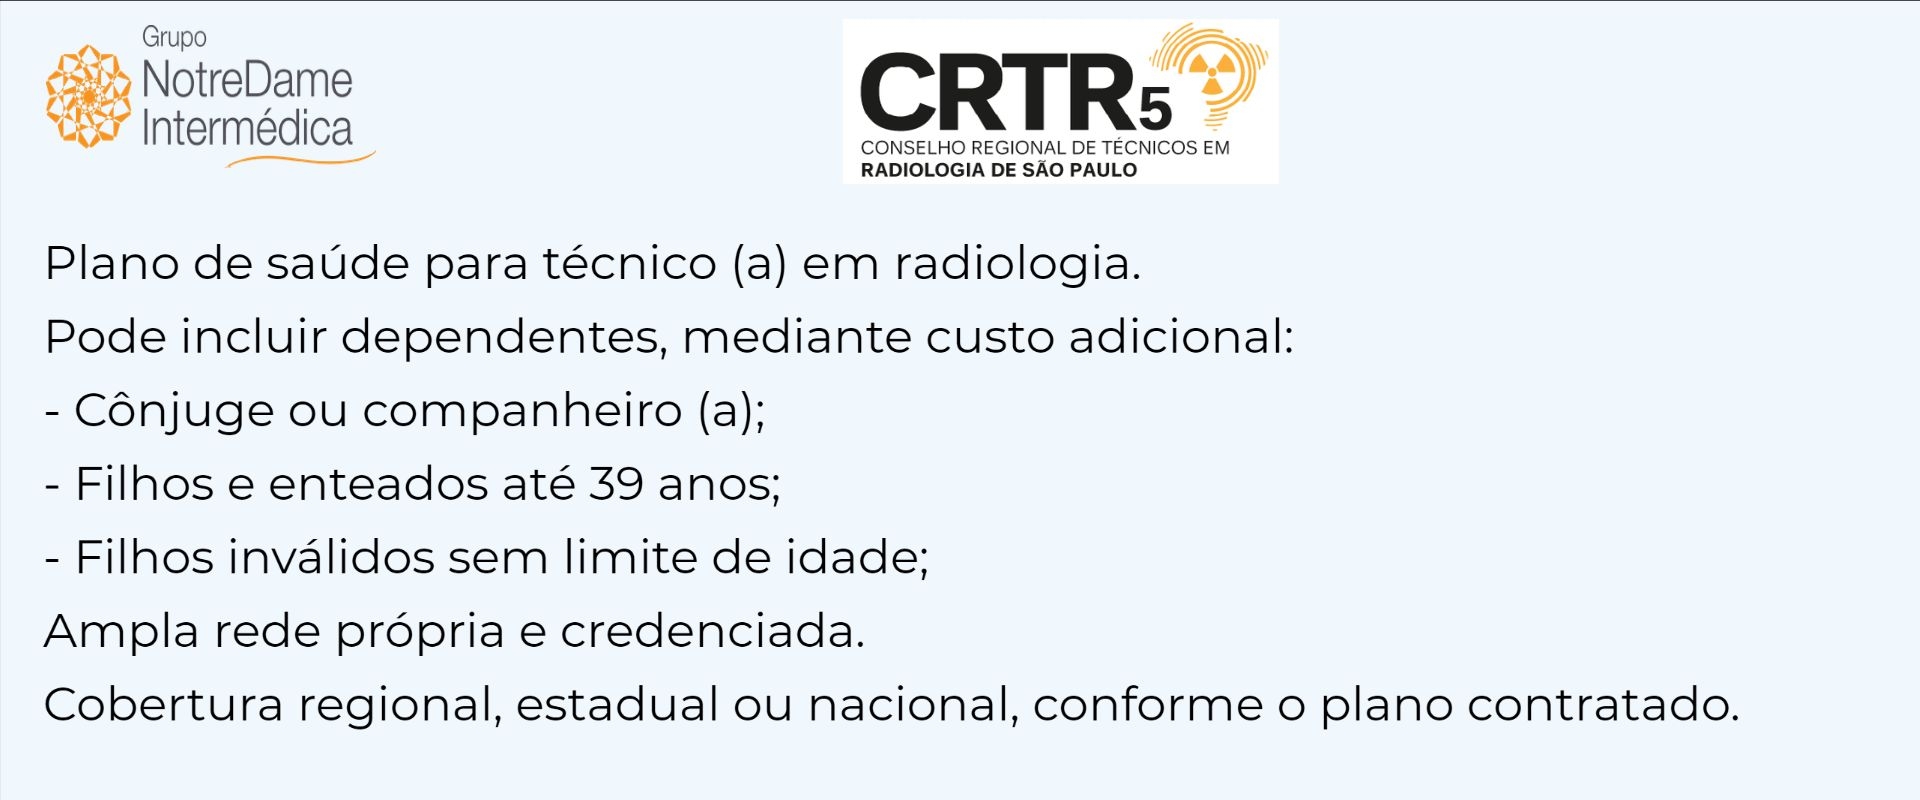 Notredame Intermédica CRTR-SP